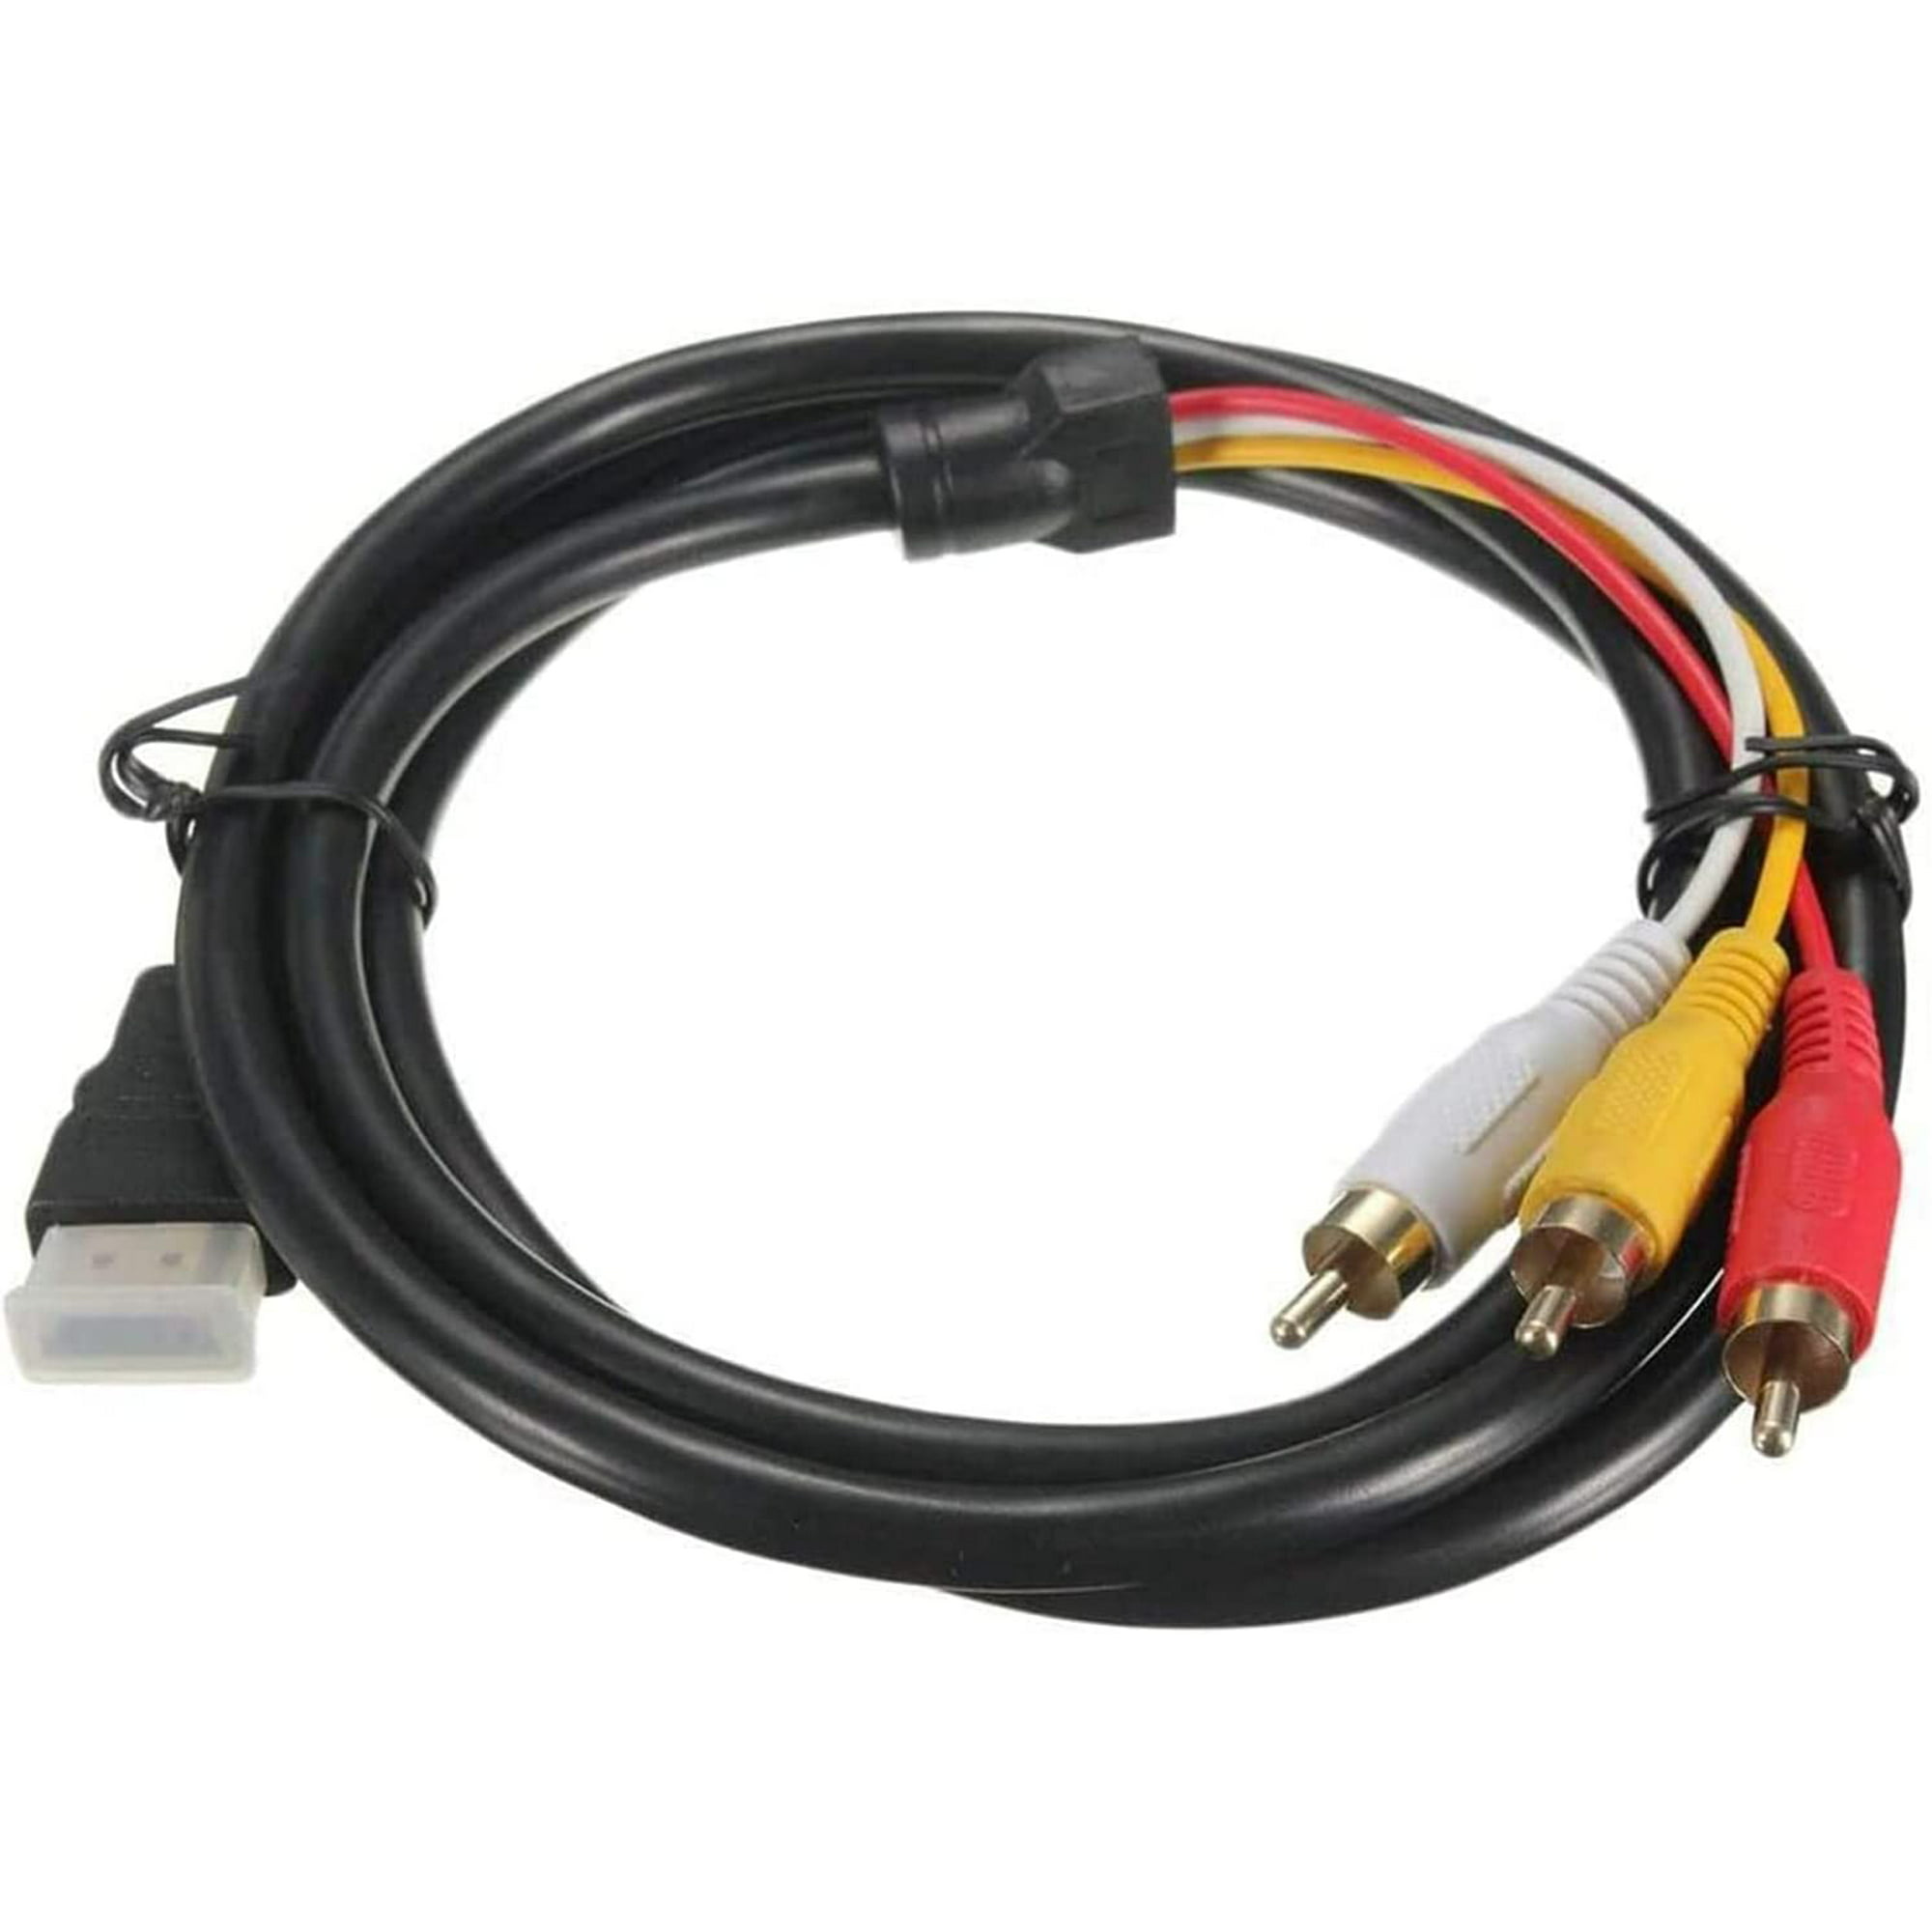 Cable HDMI a RCA, macho a macho, Cable Componente de audio y video,  adaptador convertidor, 1.8M por Adepaton CZDZ-HY46